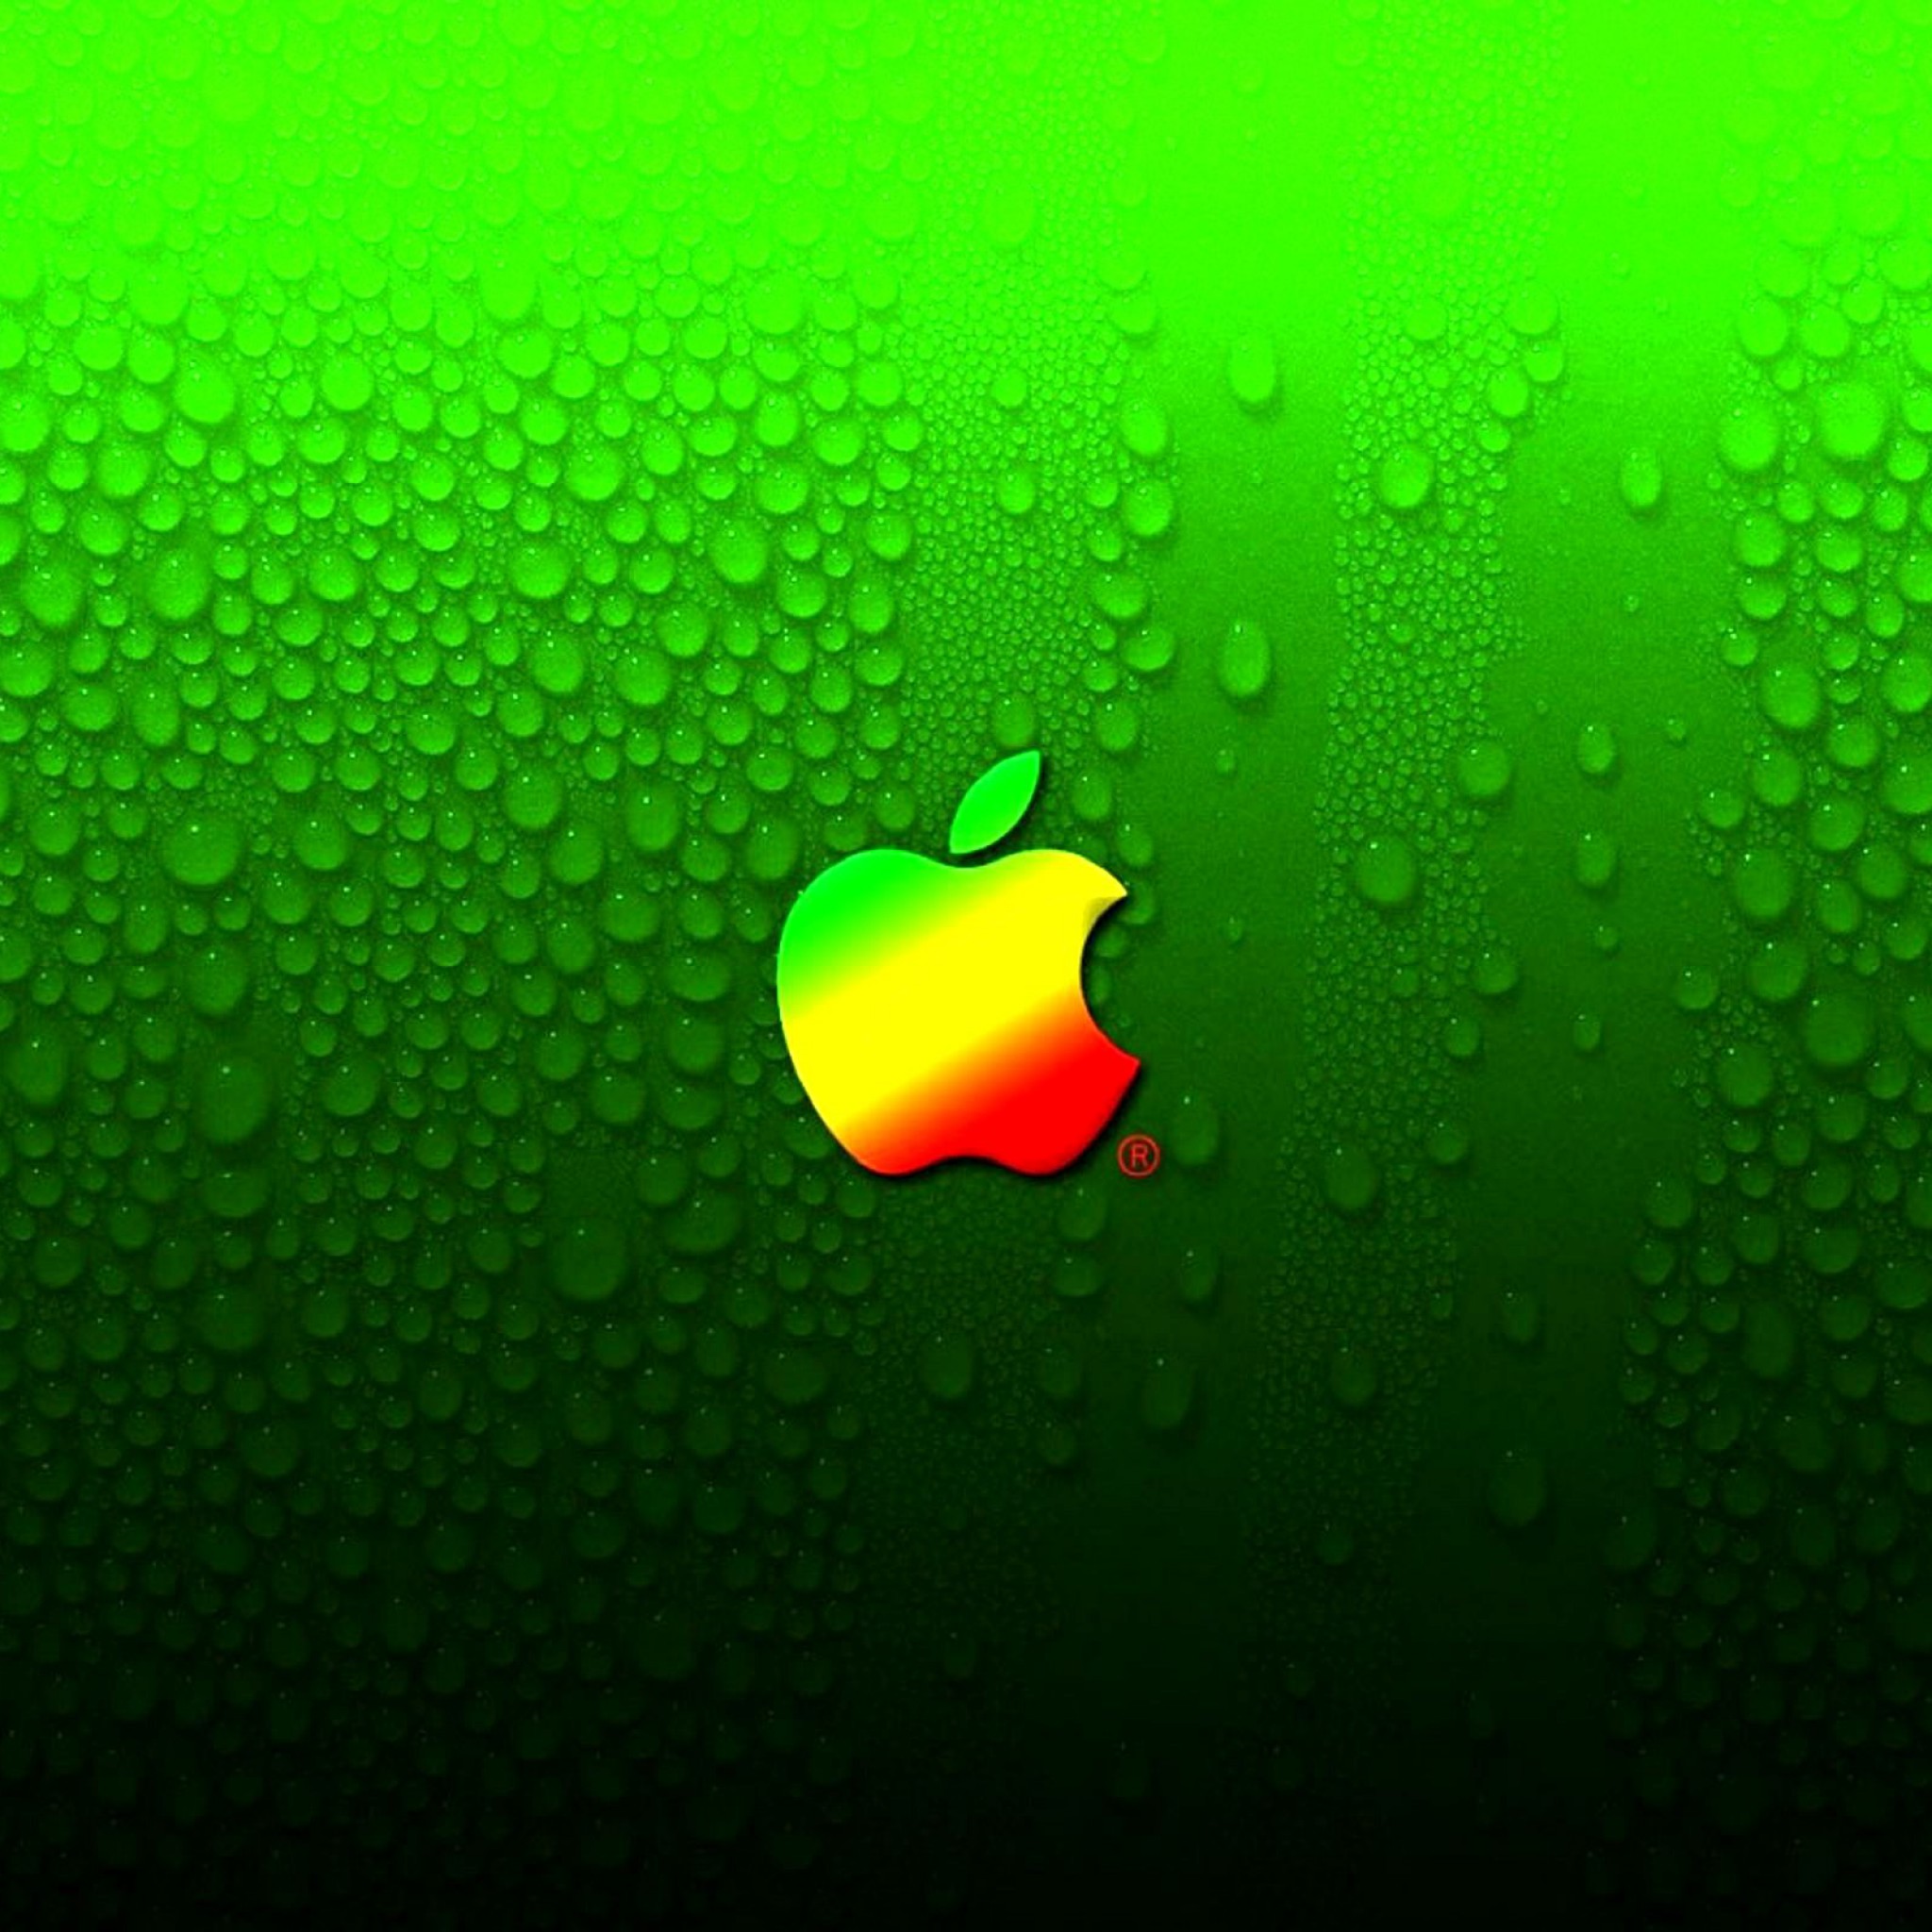 Appleロゴ 背景グリーン Ipad タブレット壁紙ギャラリー